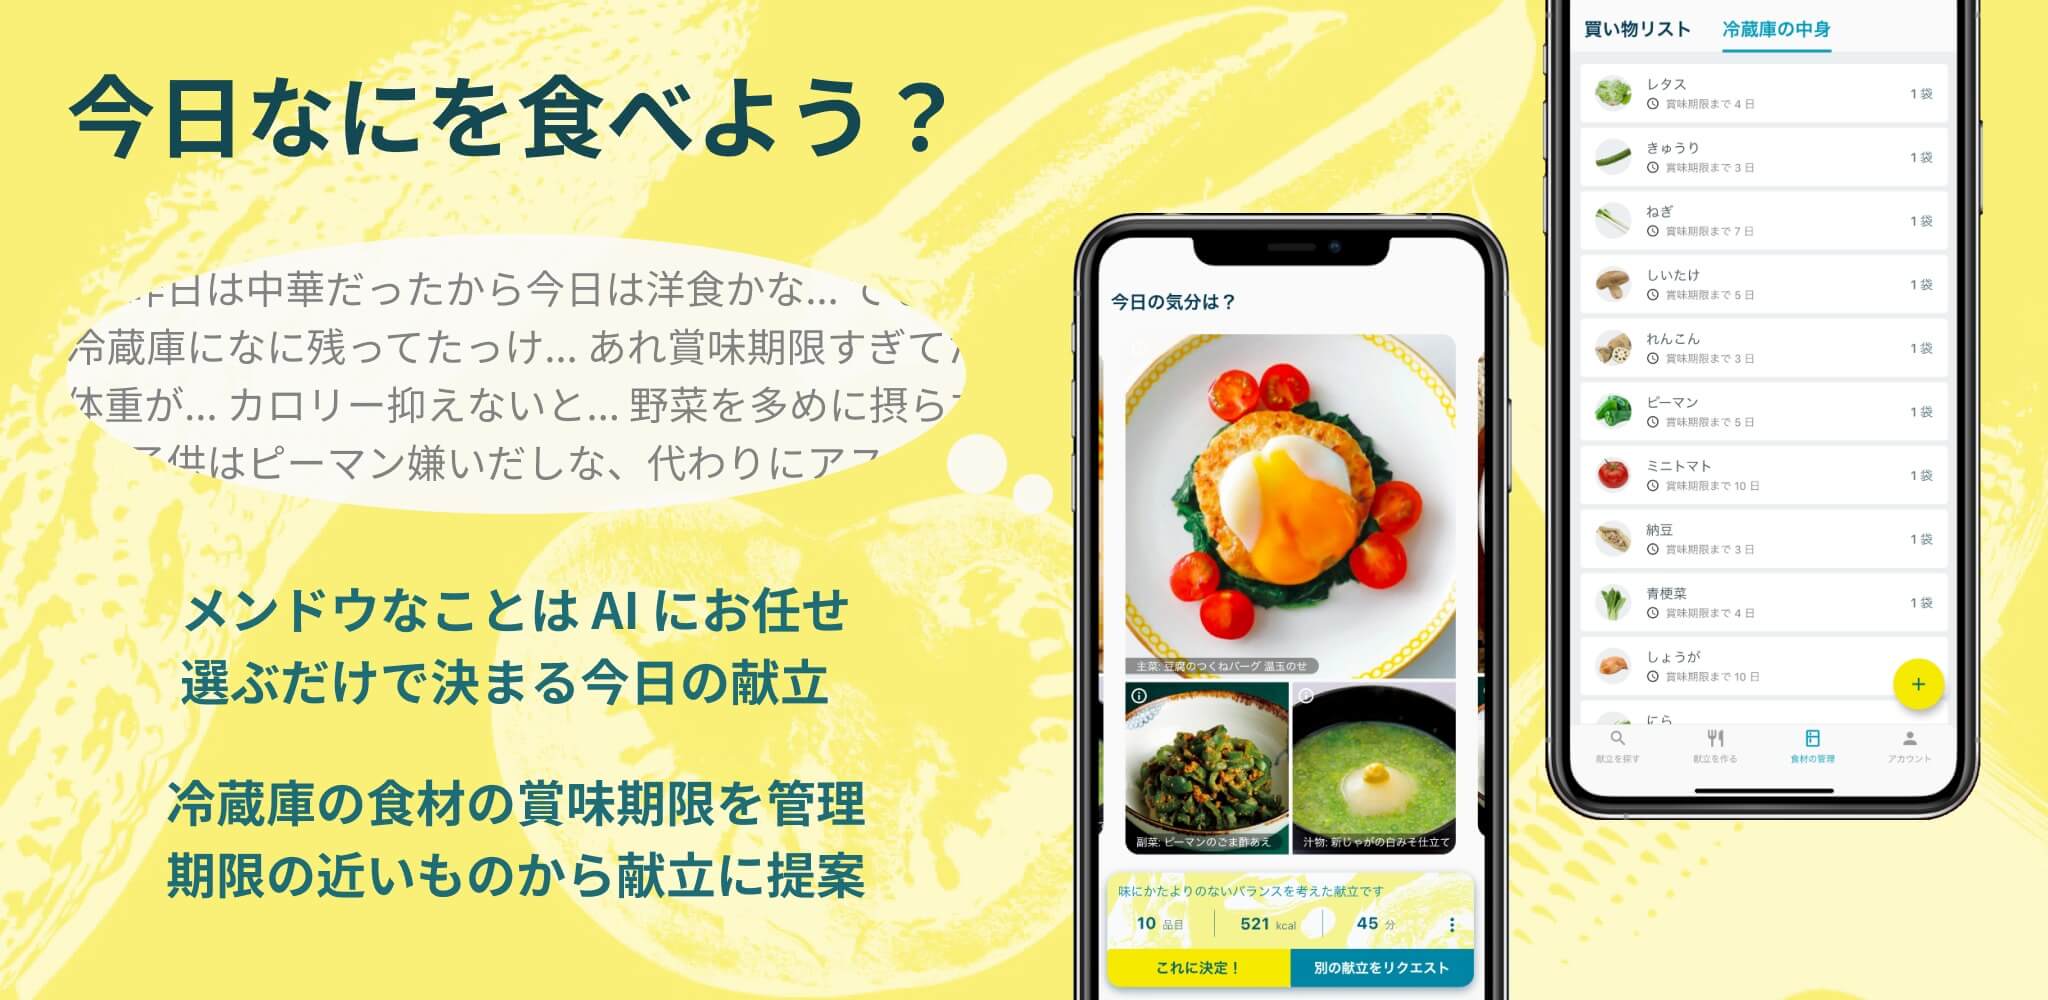 冷蔵庫の食材からaiが献立を提案するアプリ Frish がリリース Ai製品 サービスの比較 検索 資料請求サイト